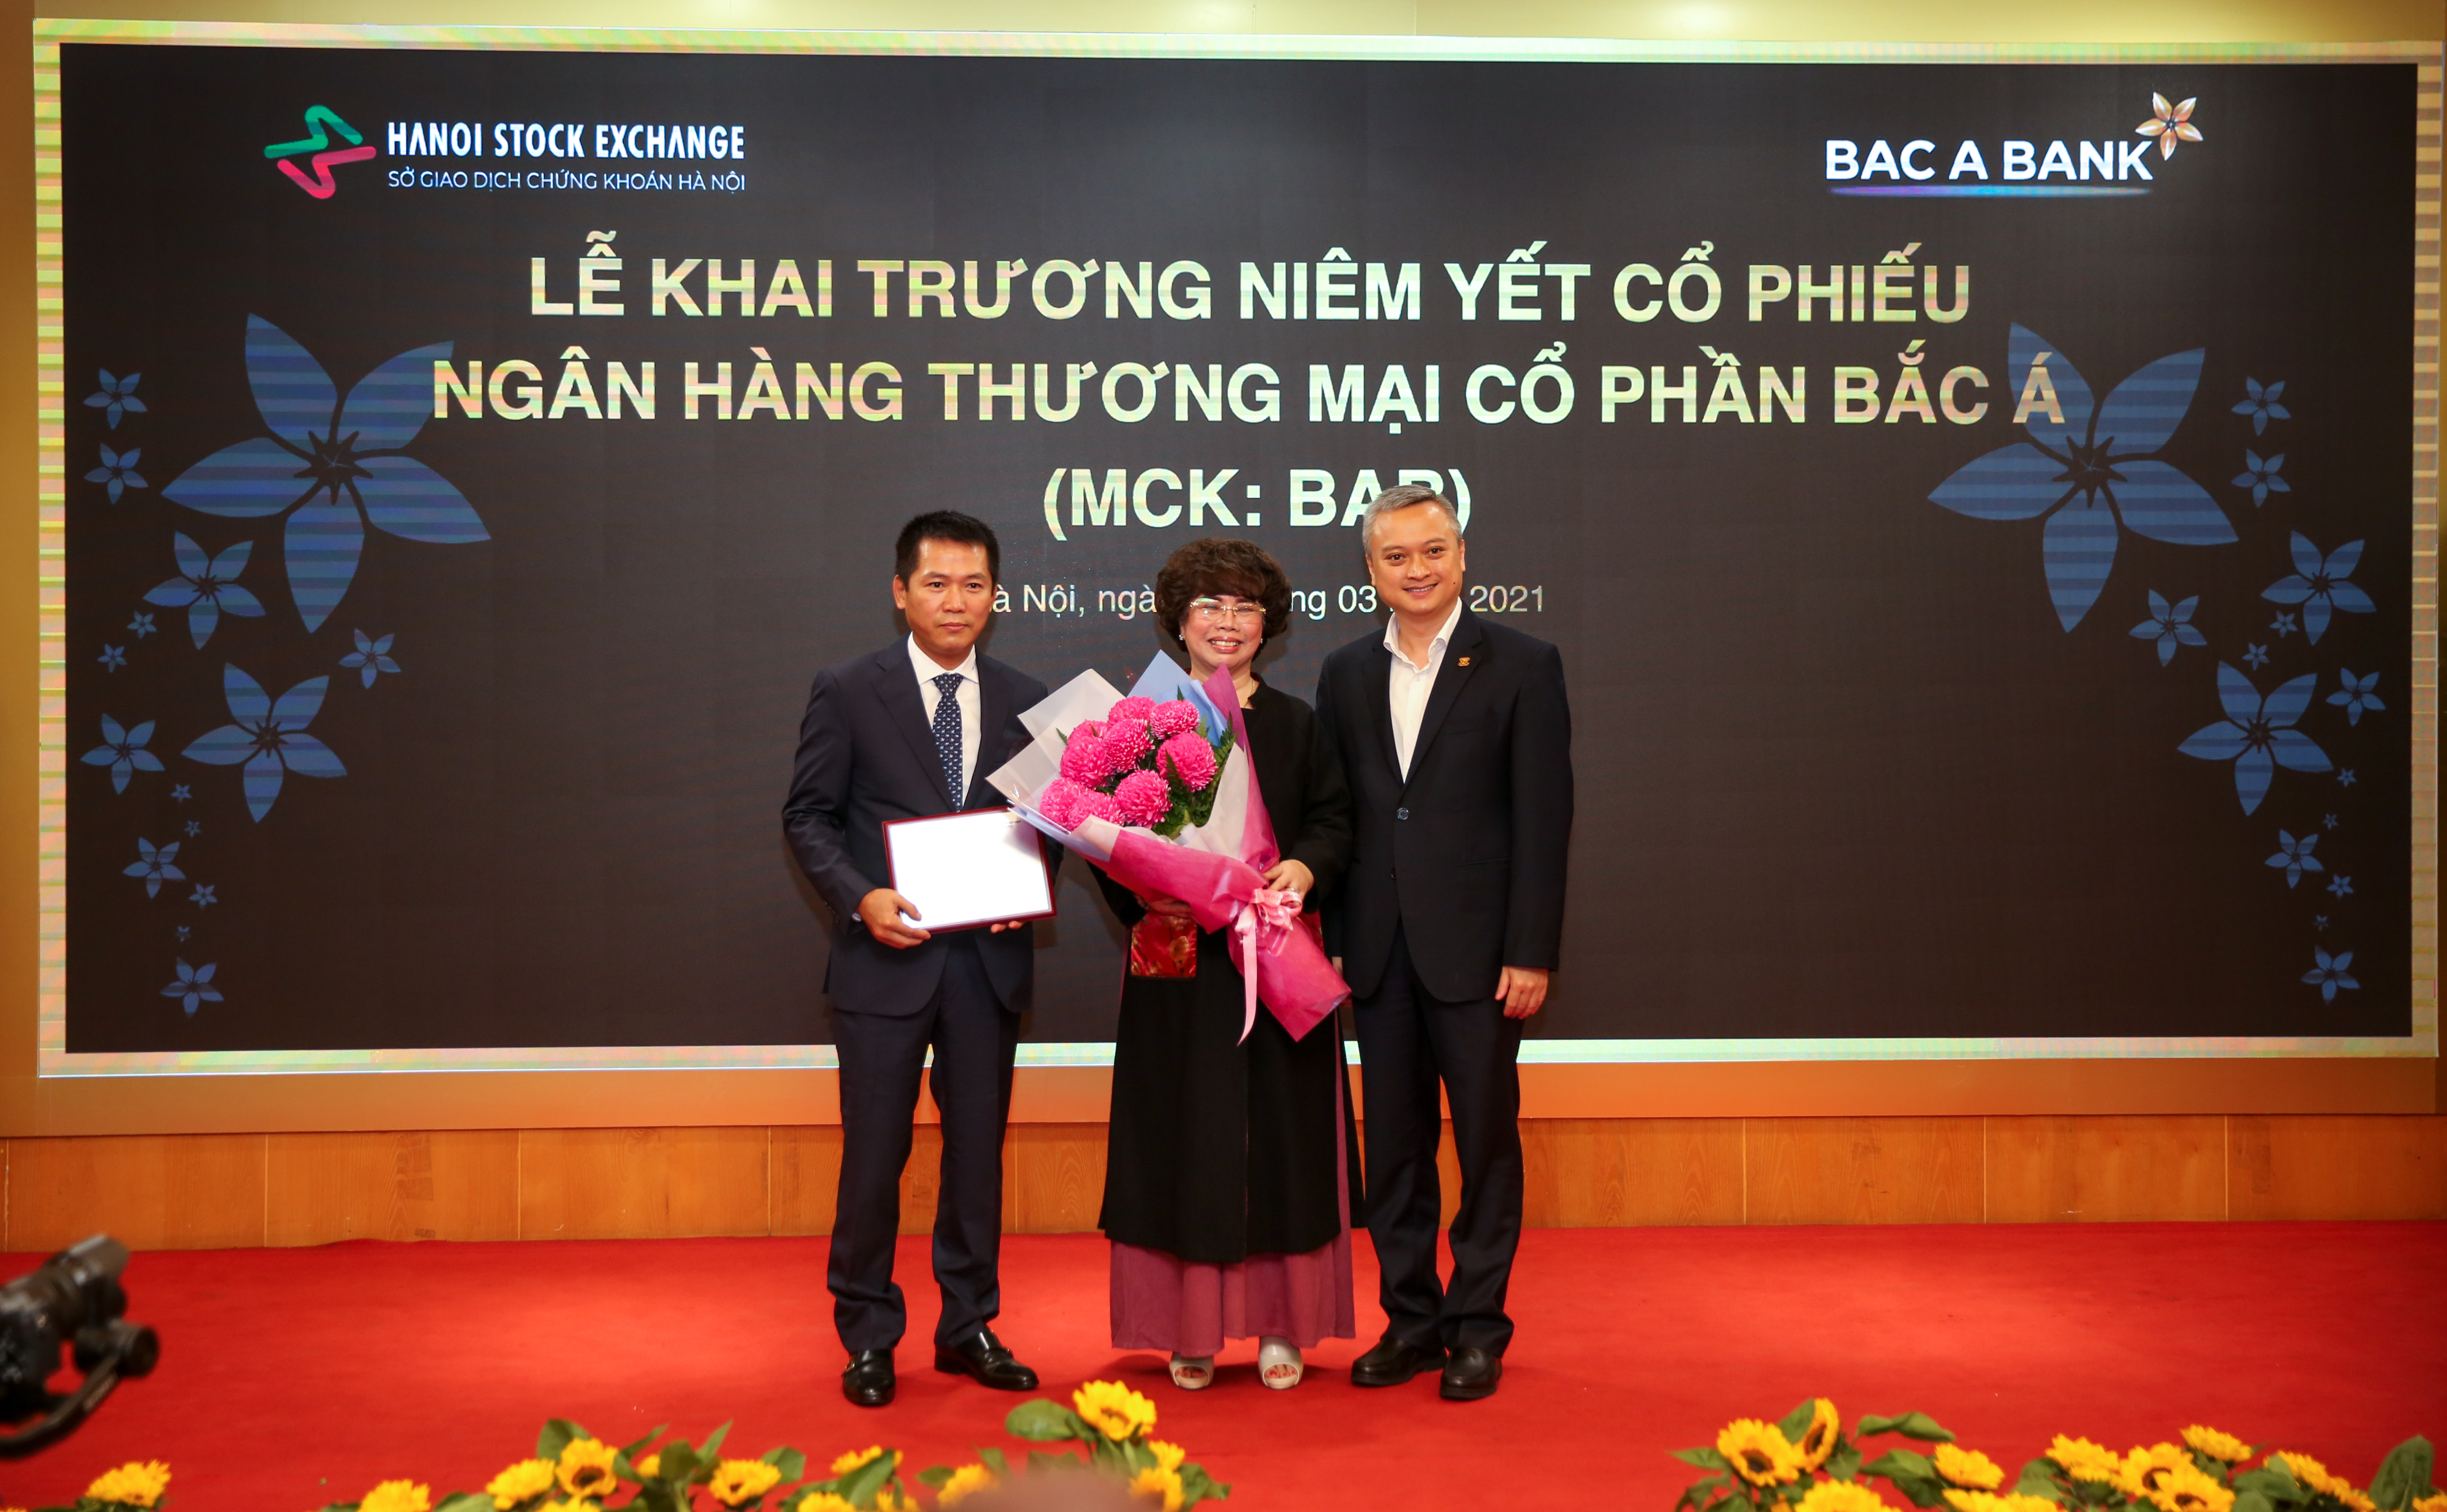 Đại diện BAC A BANK nhận bảng chứng nhận niêm yết cổ phiếu và hoa chúc mừng từ Sở GDCK Hà Nội